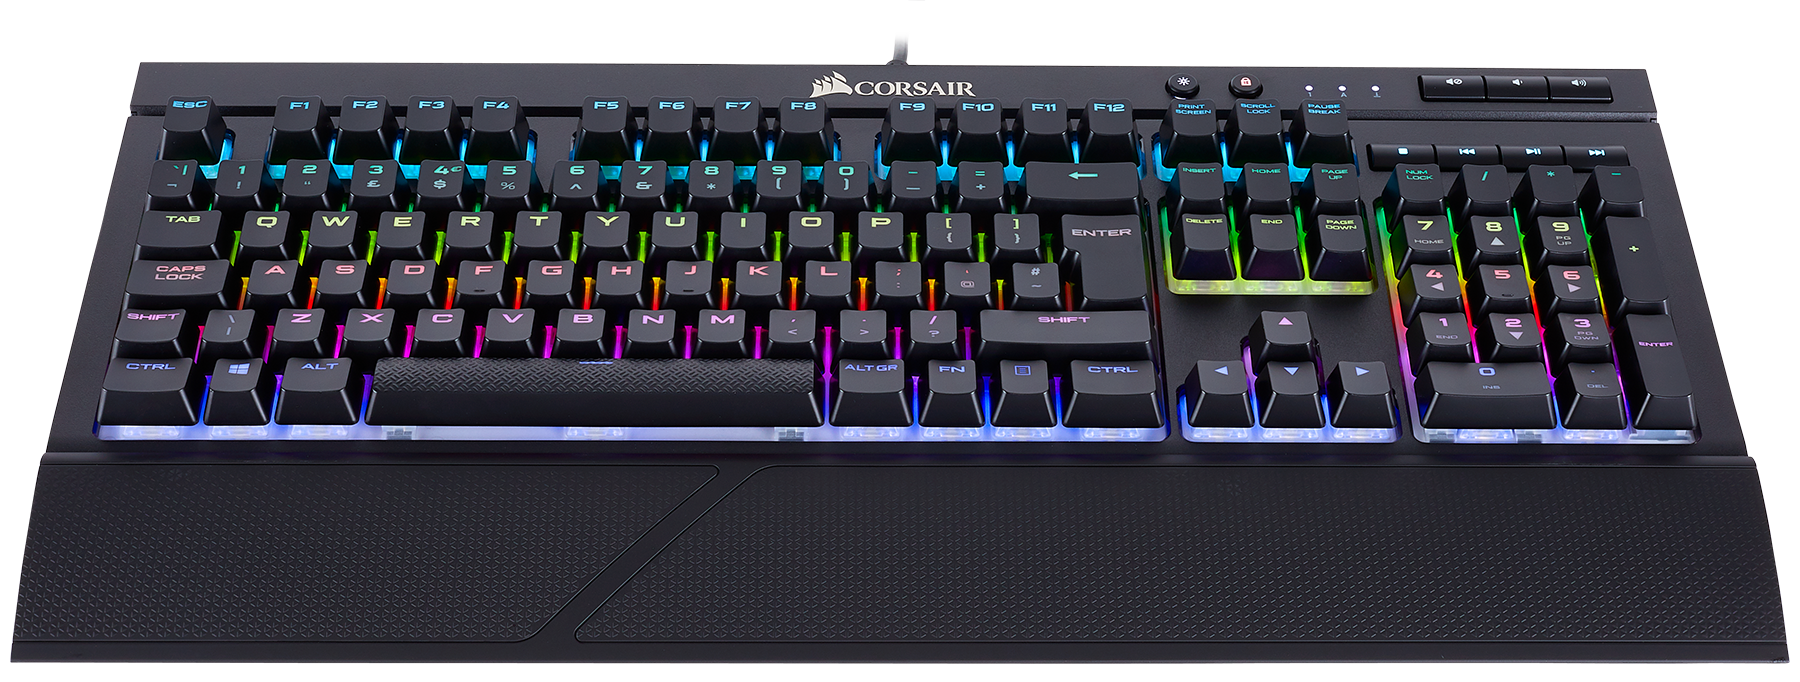 Corsair K68 RGB, un clavier mécanique résistant aux éclaboussures